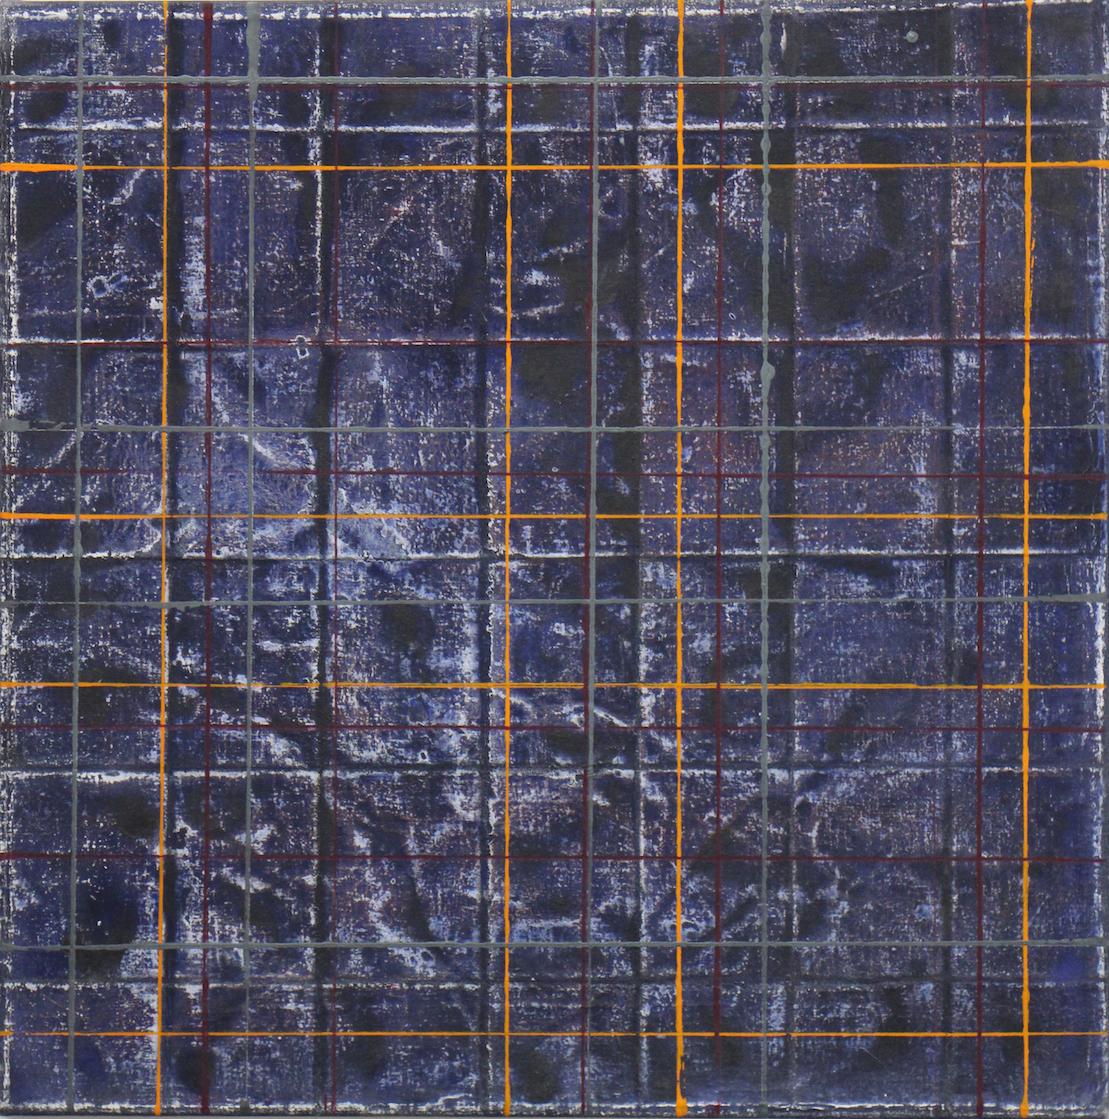 Abstract Painting Jean Wolff - Peinture carrée en acrylique sur toile à carreaux de jean